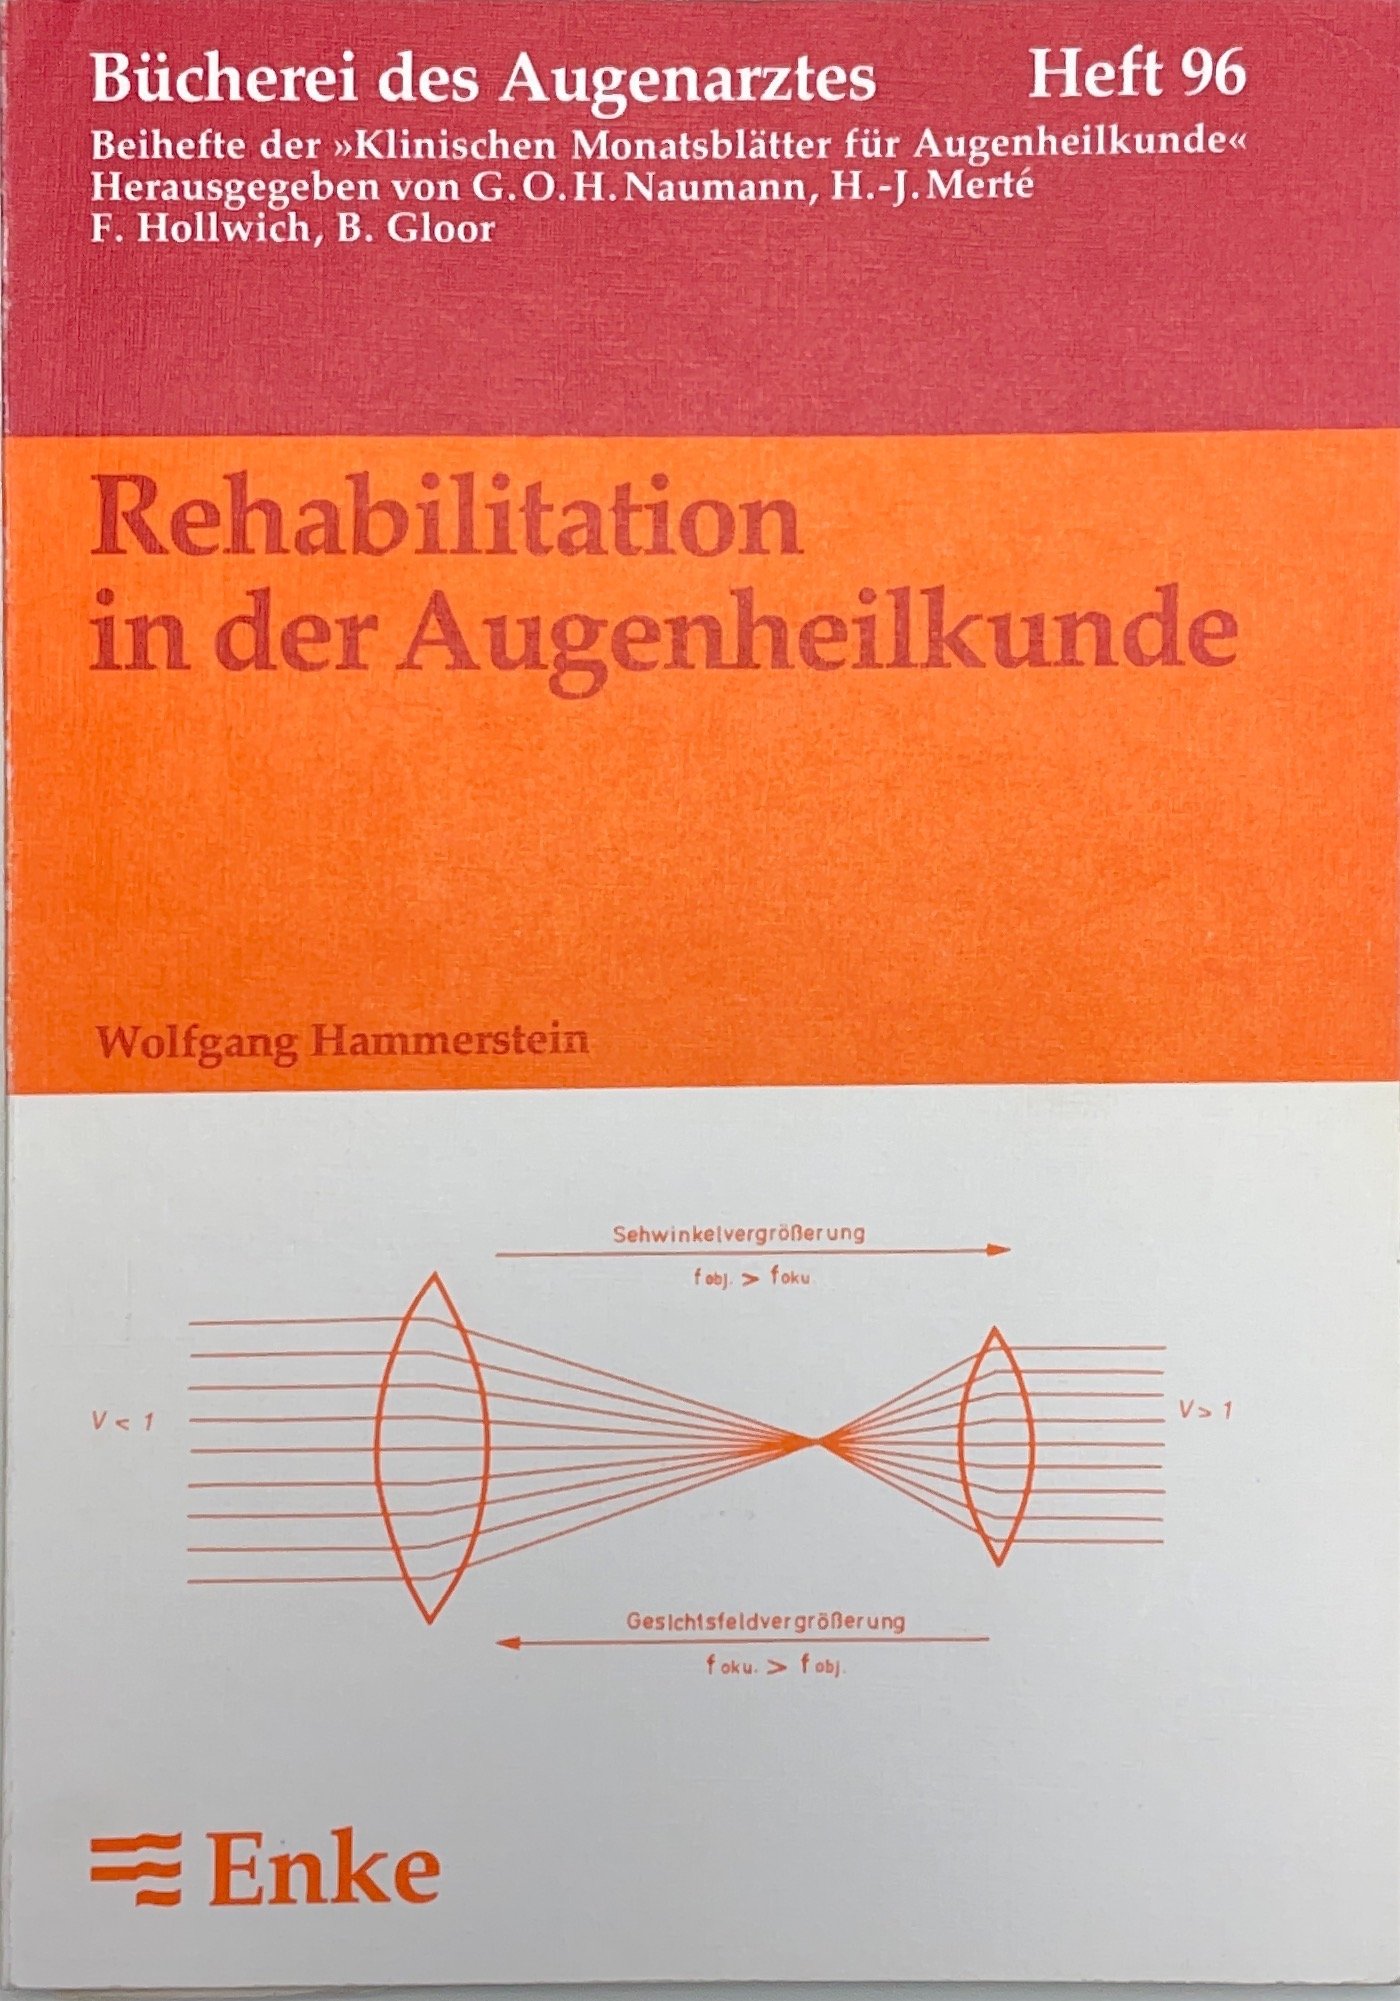 Rehabilitation in der Augenheilkunde (Krankenhausmuseum Bielefeld e.V. CC BY-NC-SA)